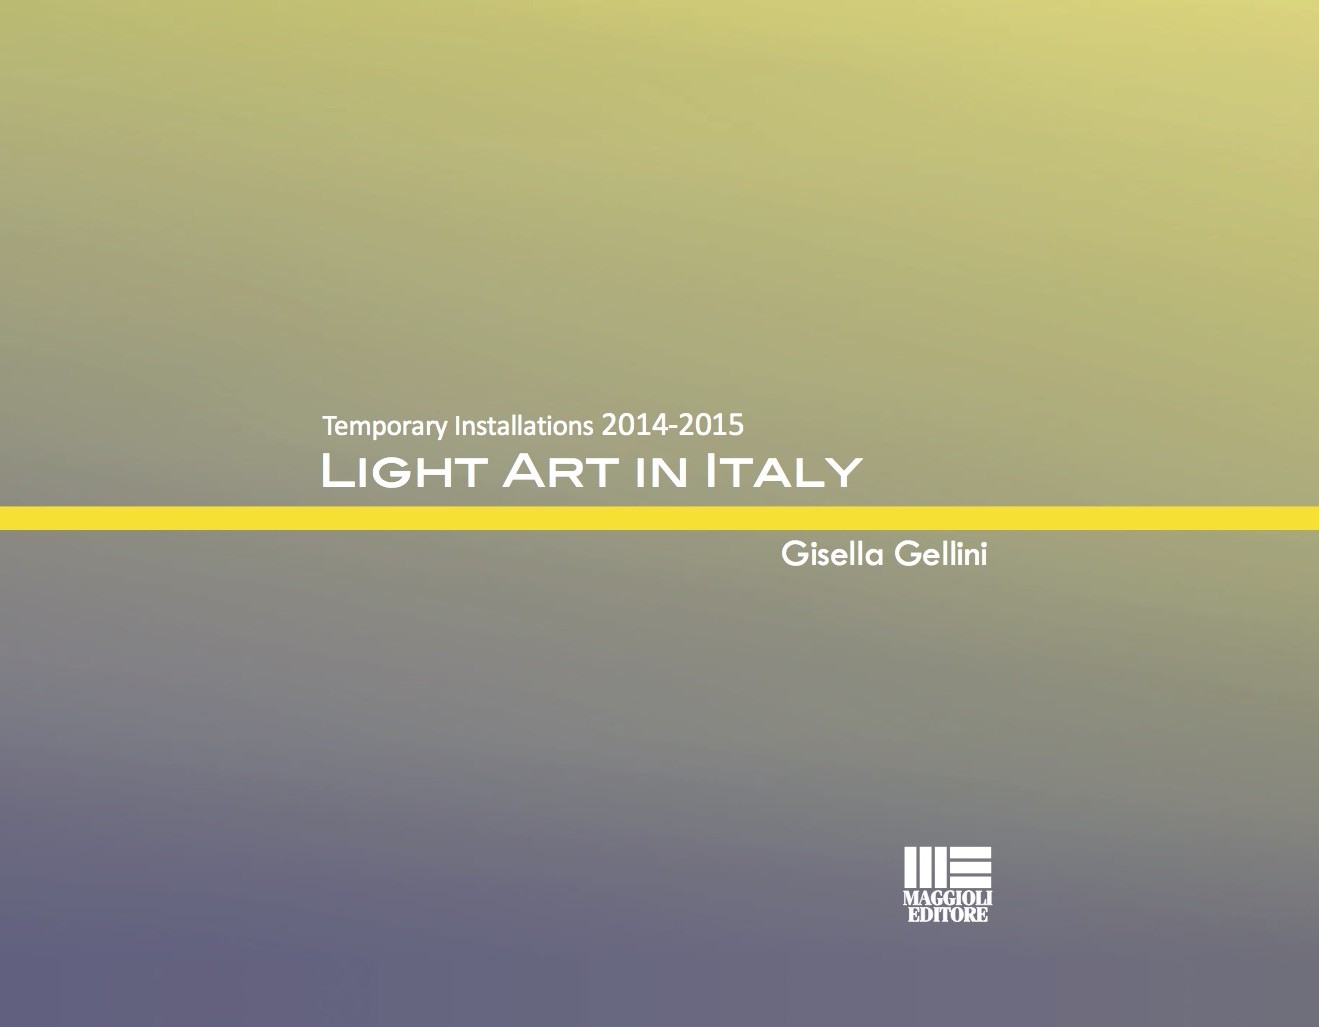 Light Art in Italy - Temporary Installations 2014-2015